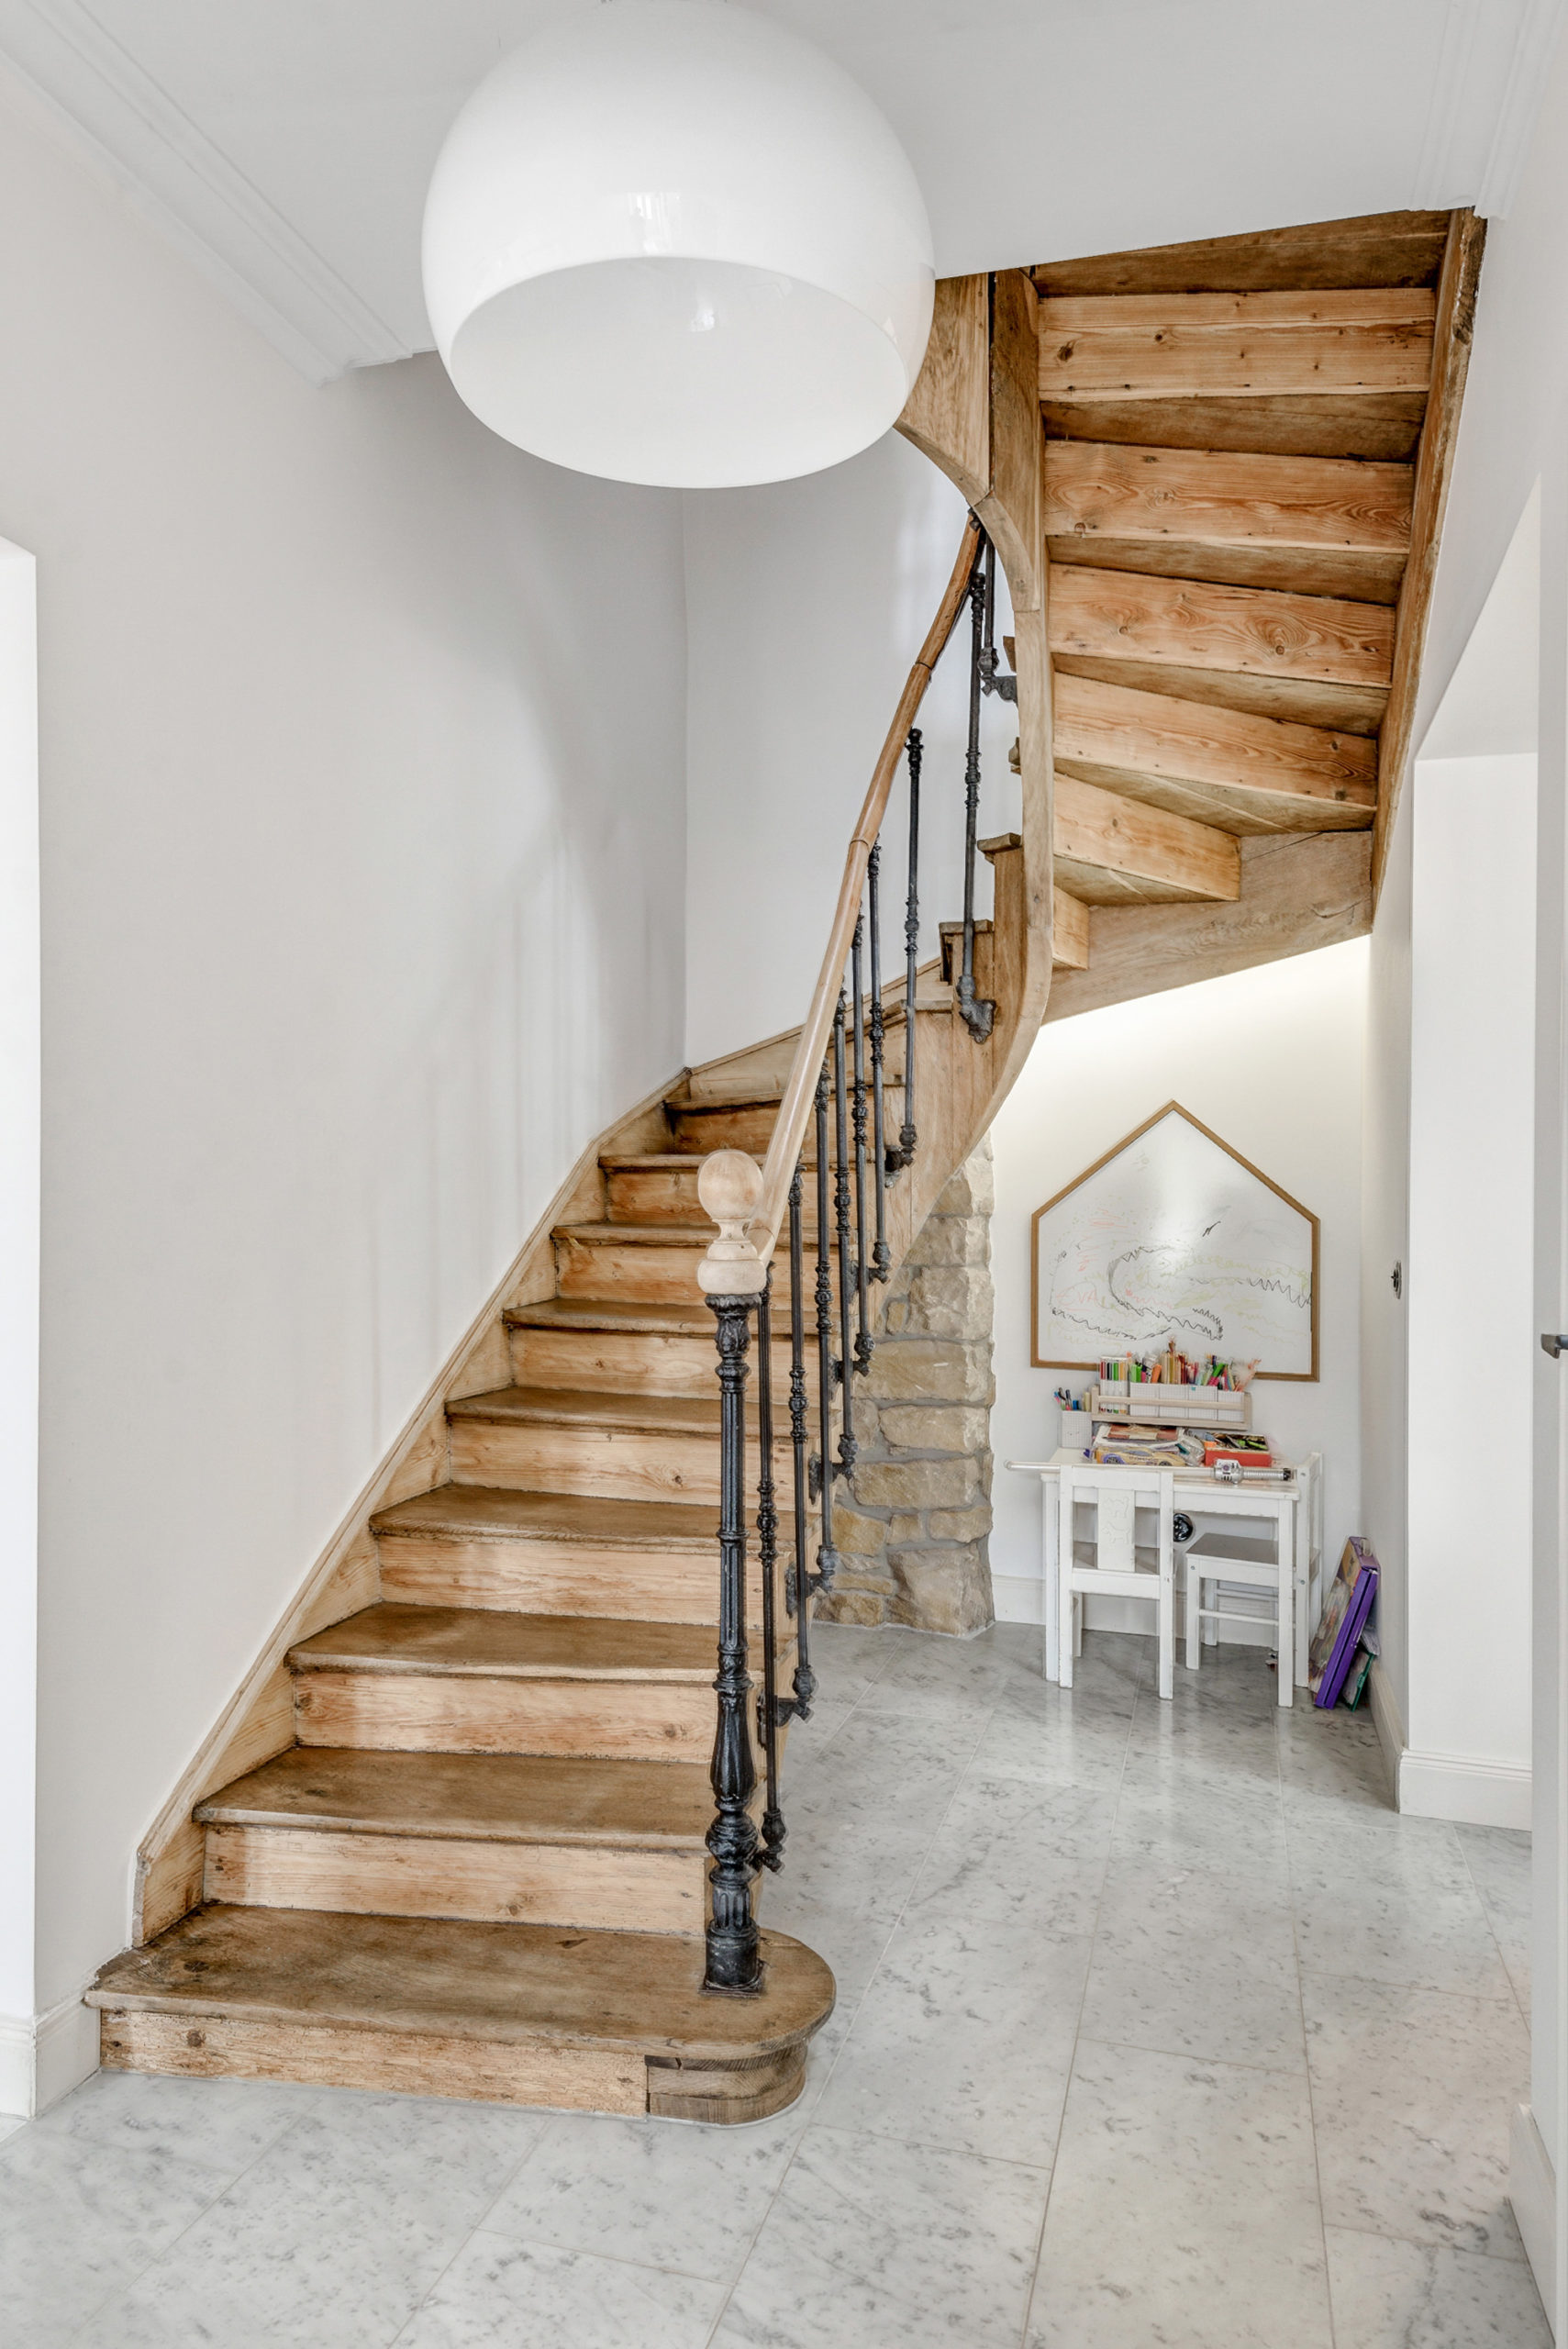 escalier-rénovation-parquet-parquet-marbre-luxembourg-aménagement-intérieur-architecture-home-design-architecte-agencement-carole-lecocq